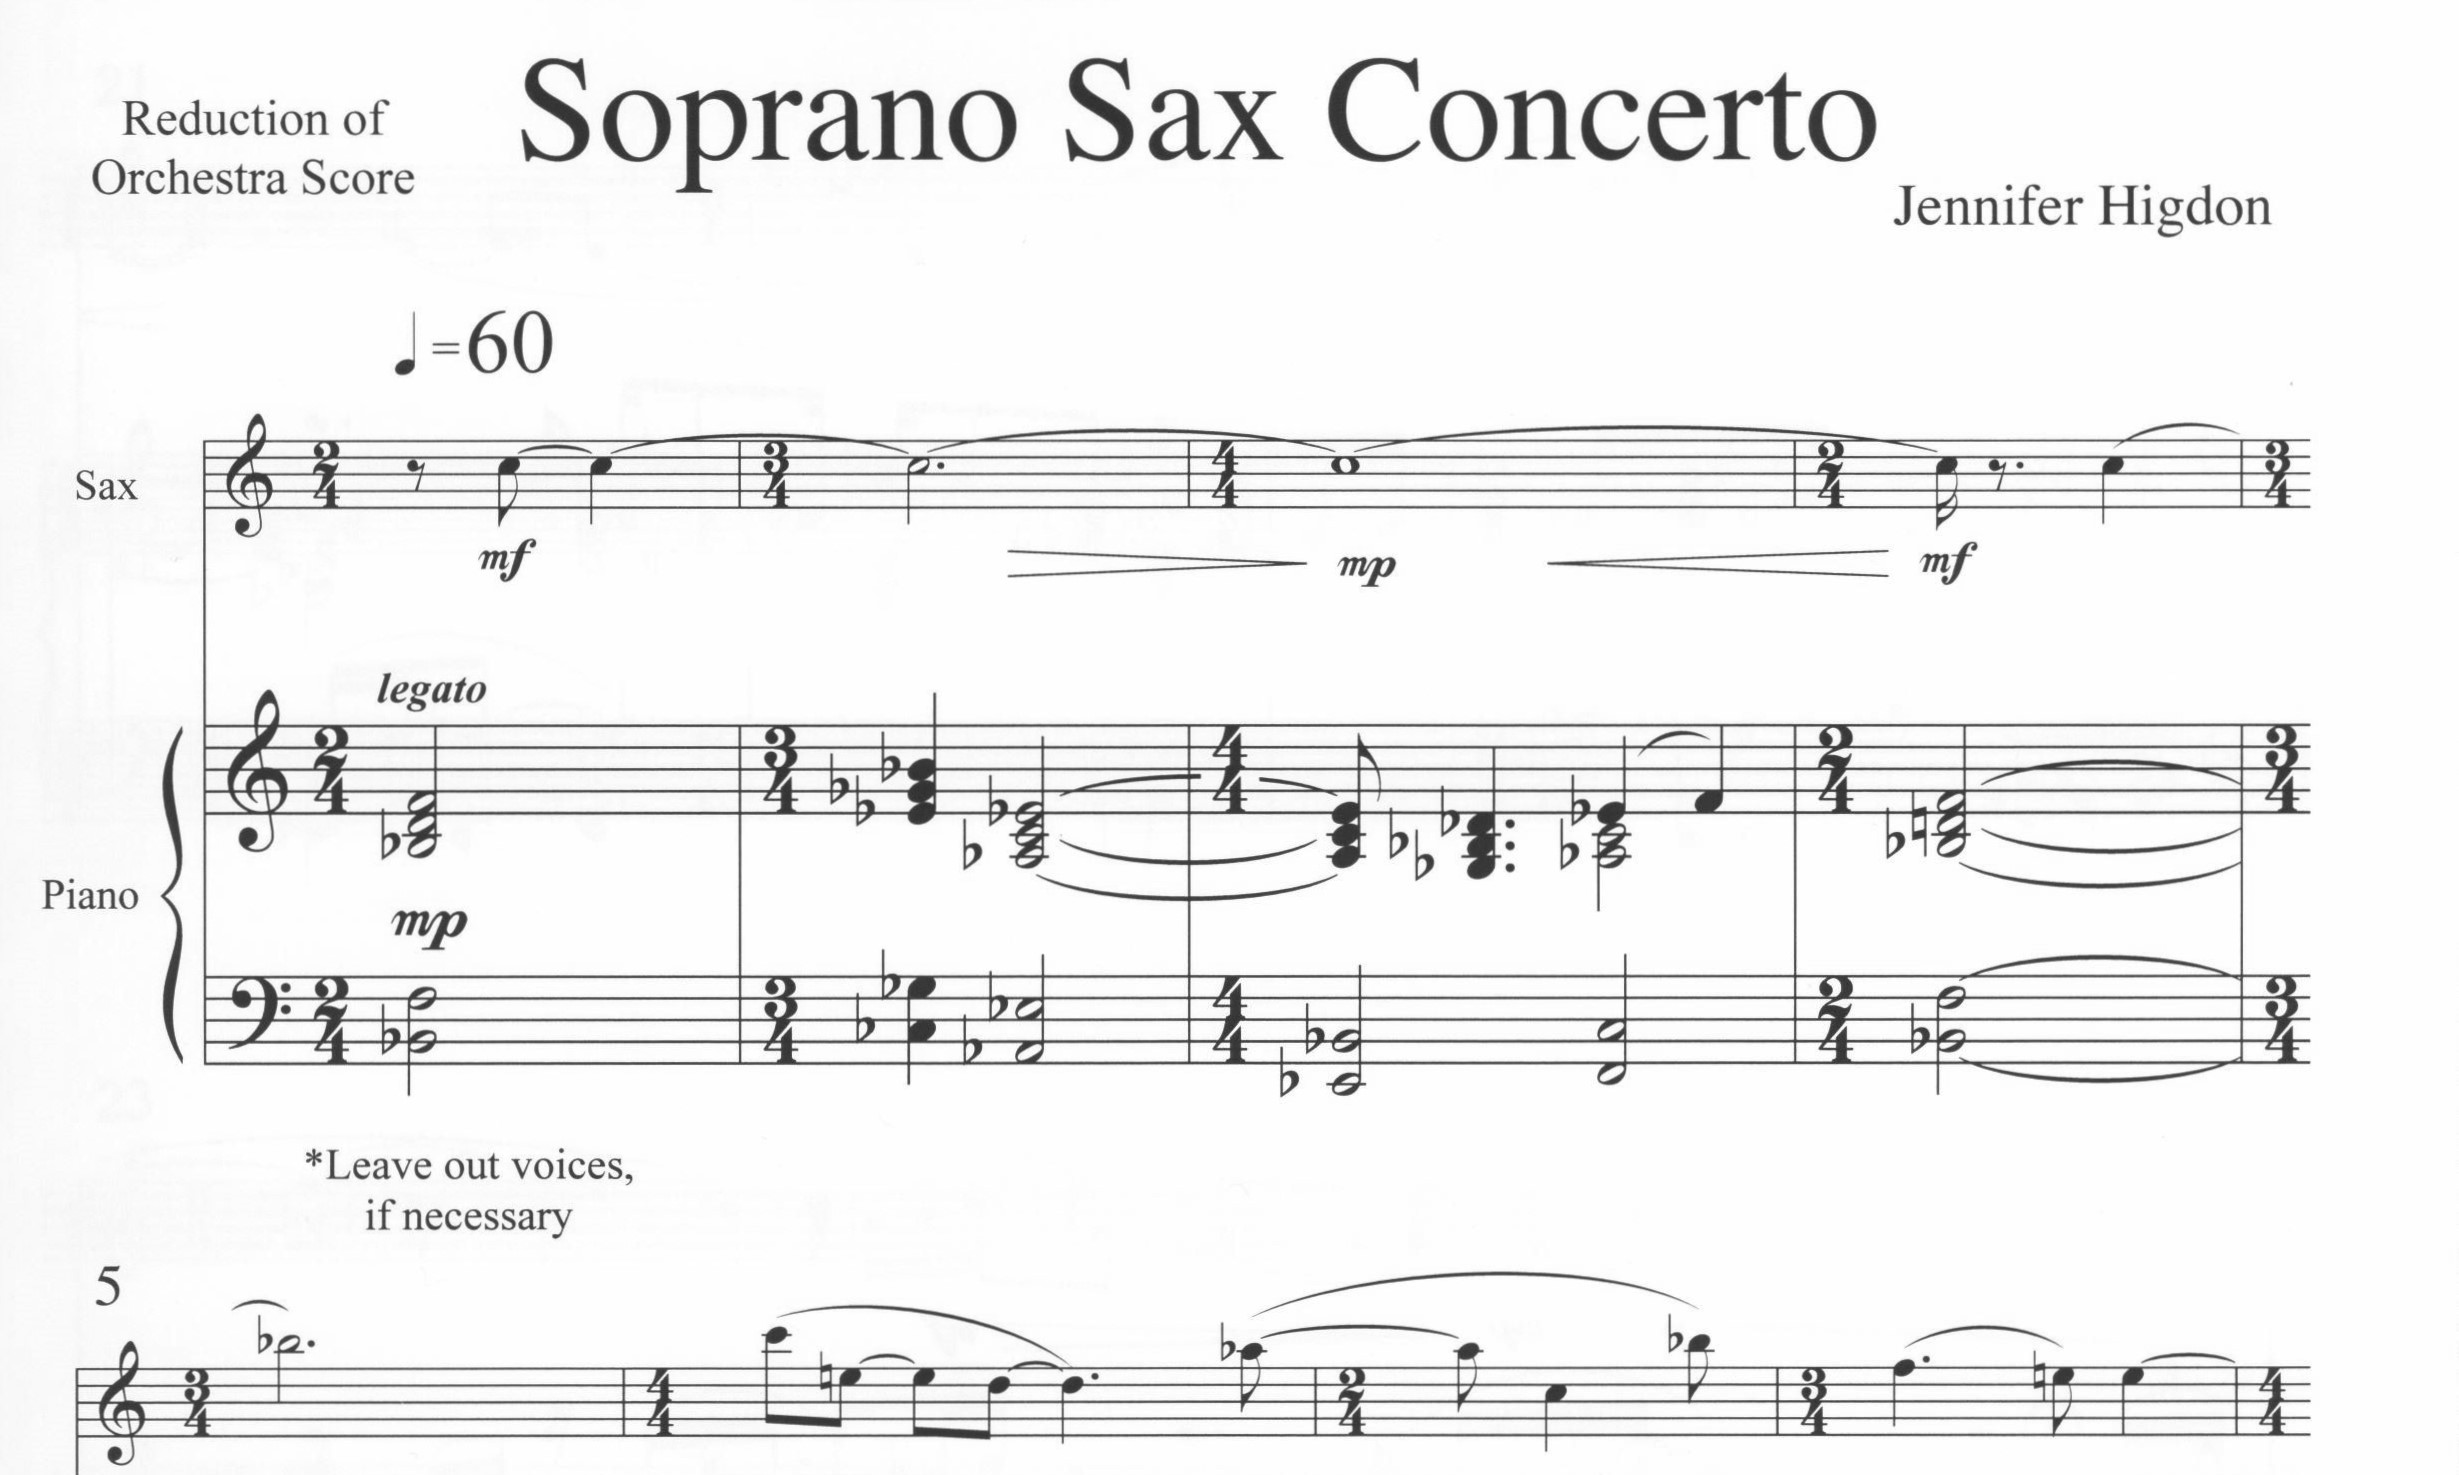 Soprano Sax Concerto - Jennifer Higdon